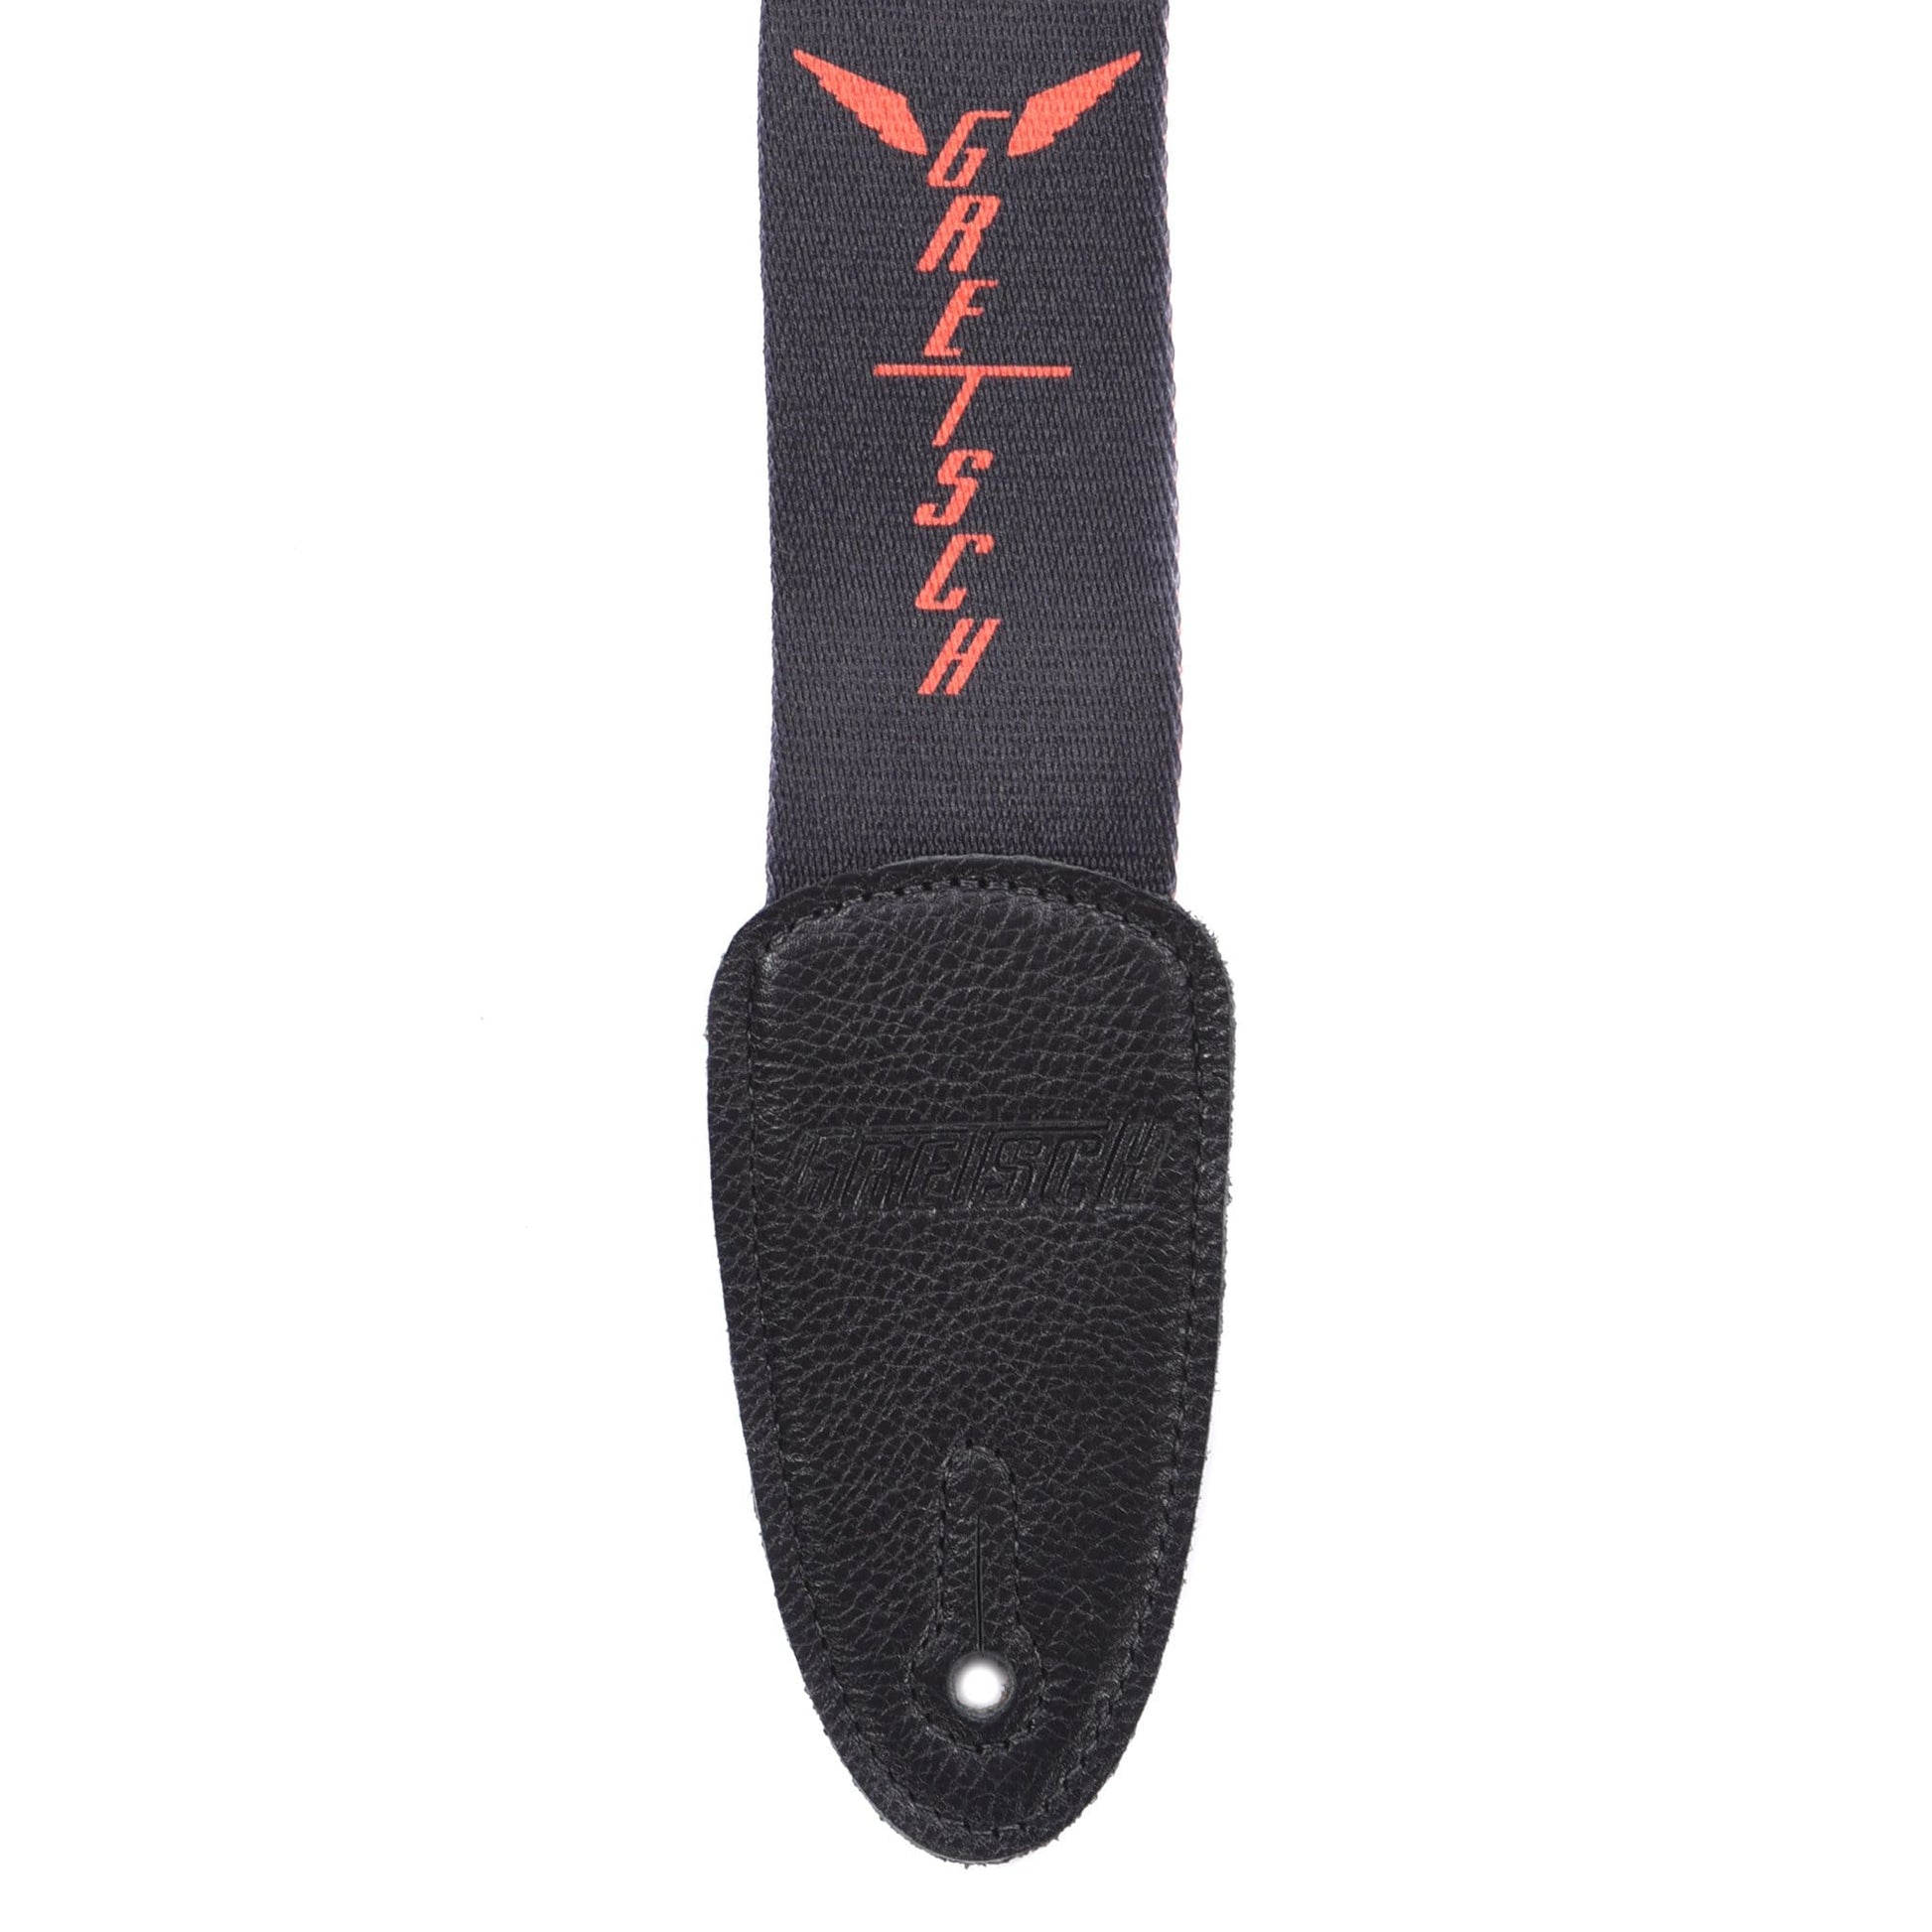 Gretsch Wings Black/Orange Strap Accessories / Straps